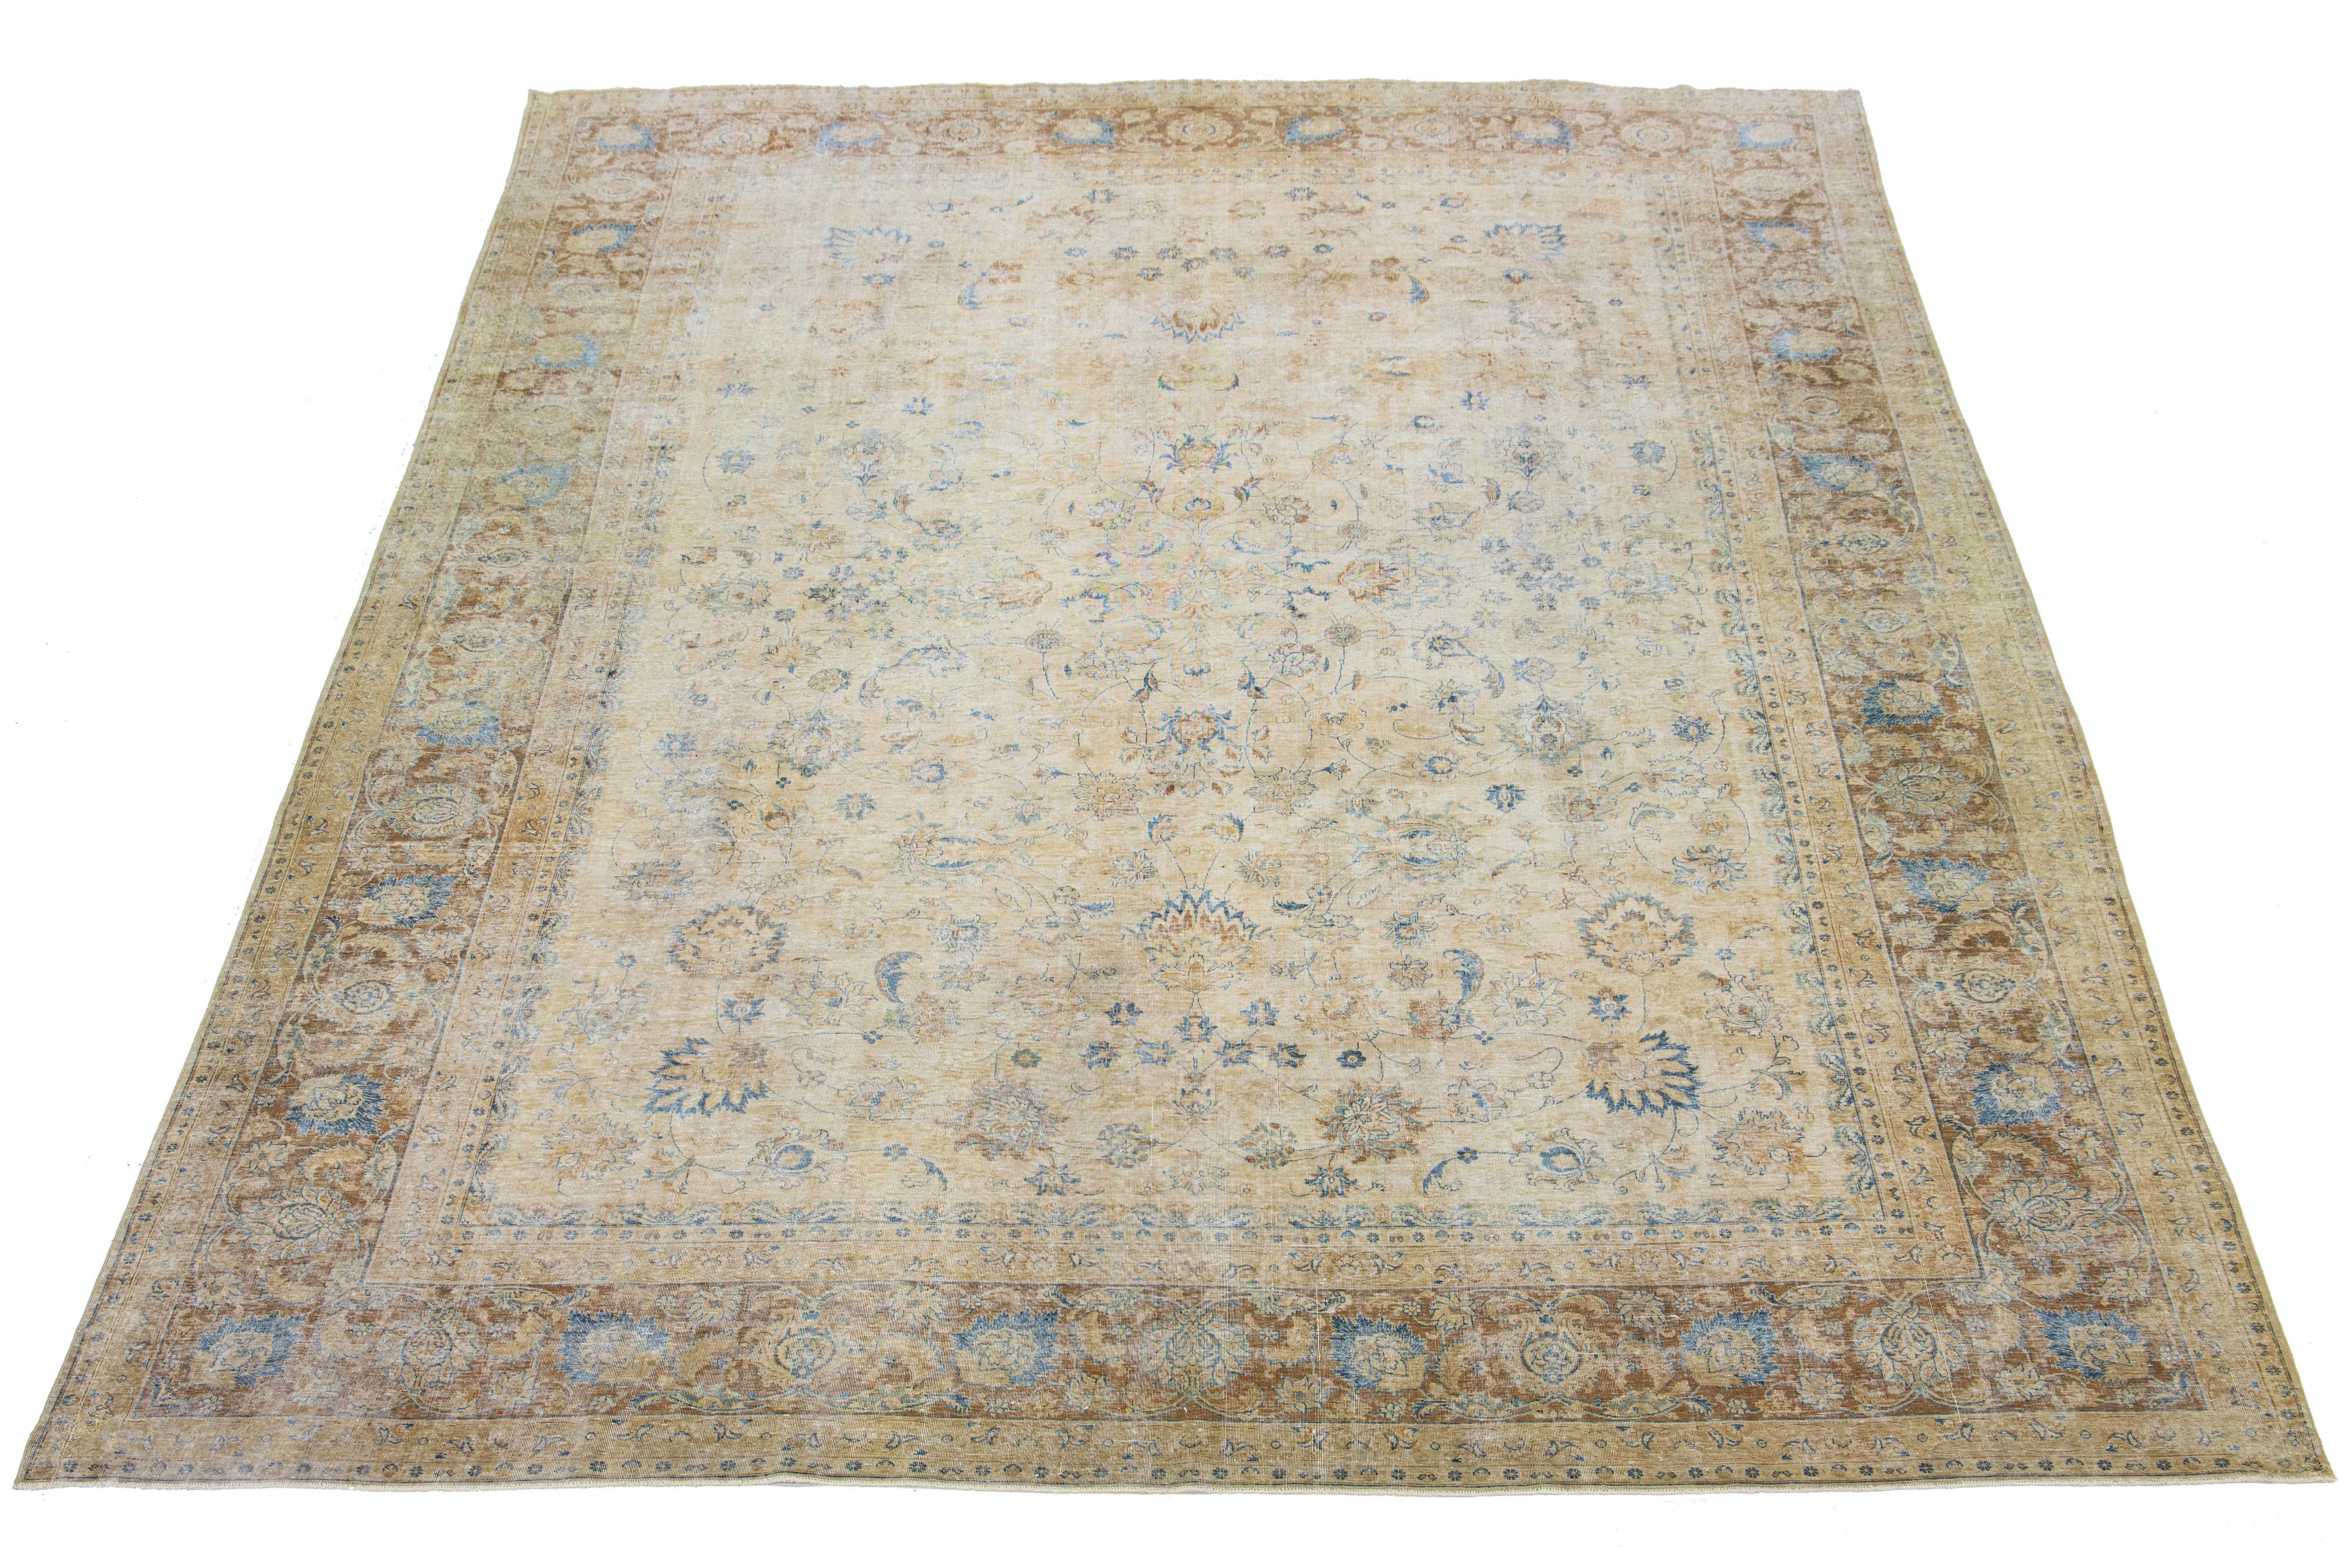 Dieser handgefertigte persische Wollteppich aus Täbris zeigt ein traditionelles Blumenmuster. Der Kontrast zwischen dem braunen und beigen Hintergrund unterstreicht das blaue Blumenmuster.

Dieser Teppich misst 11'4